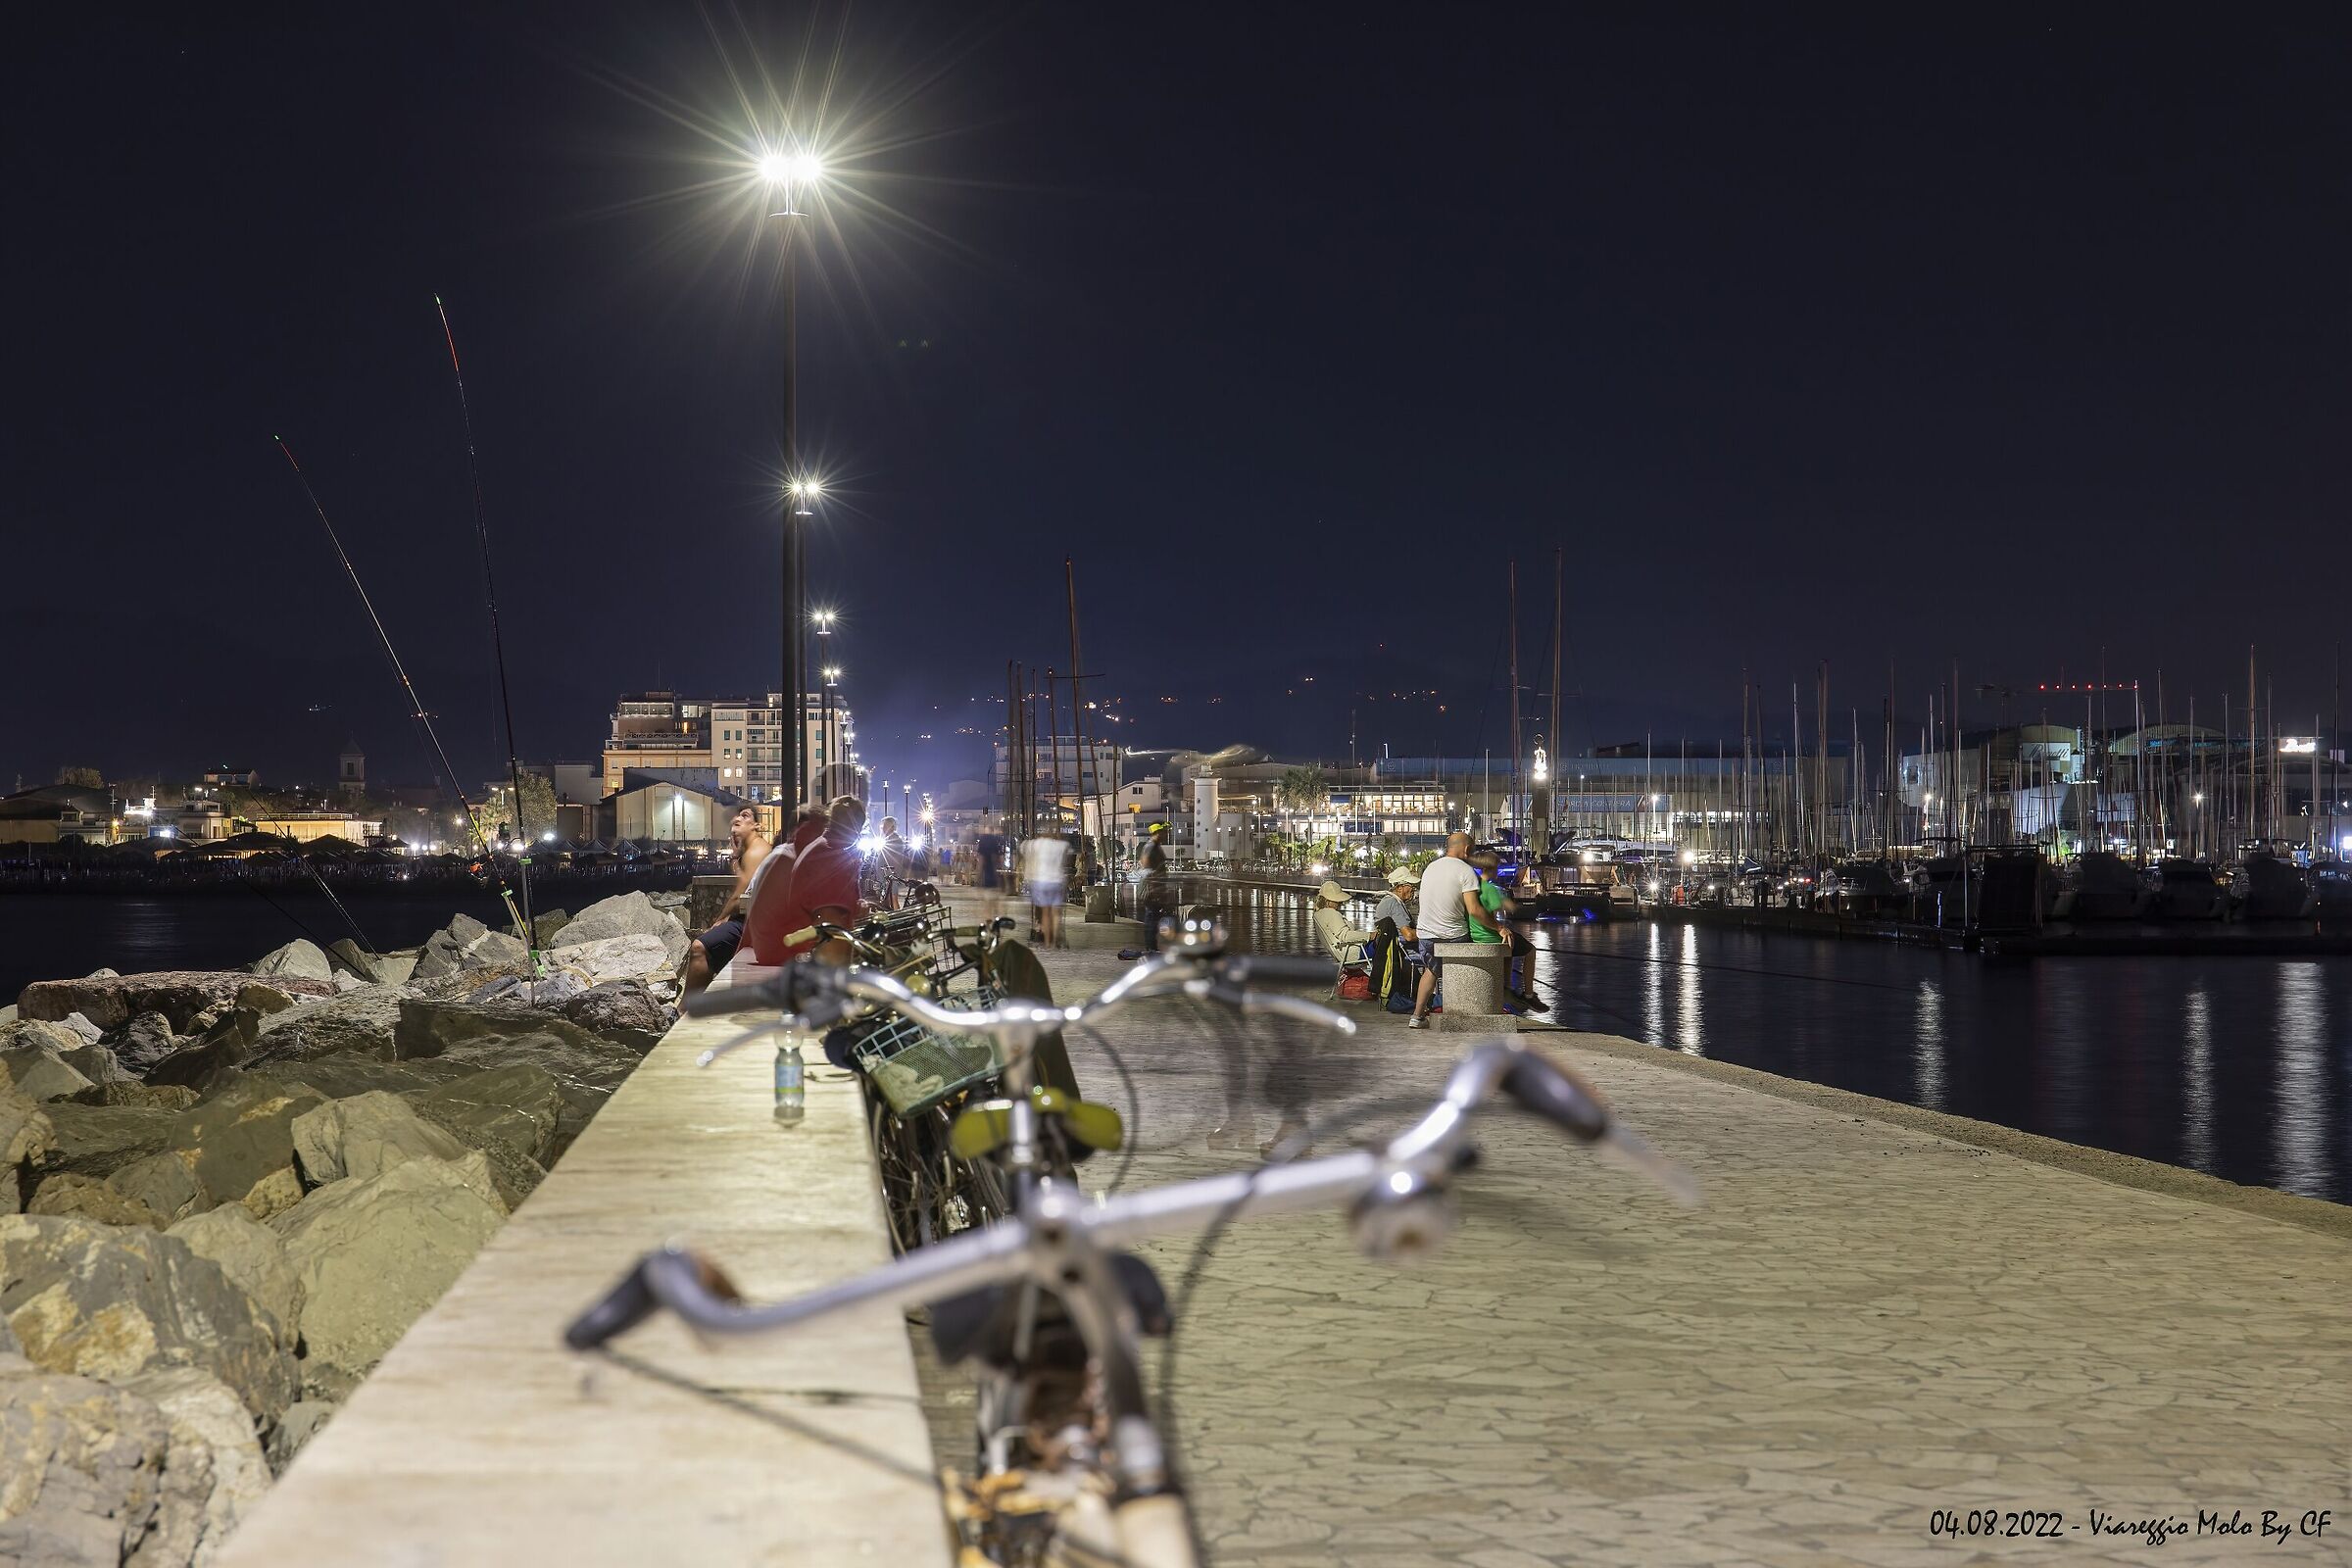 Viareggio - Pier by night...